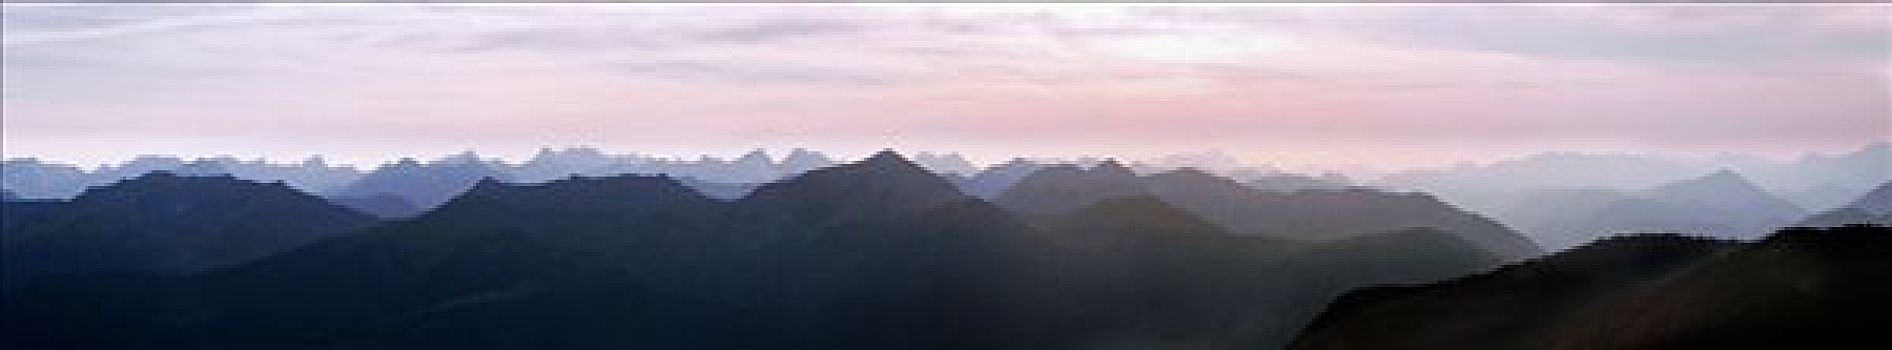 日落,全景,山脊,奥地利,欧洲